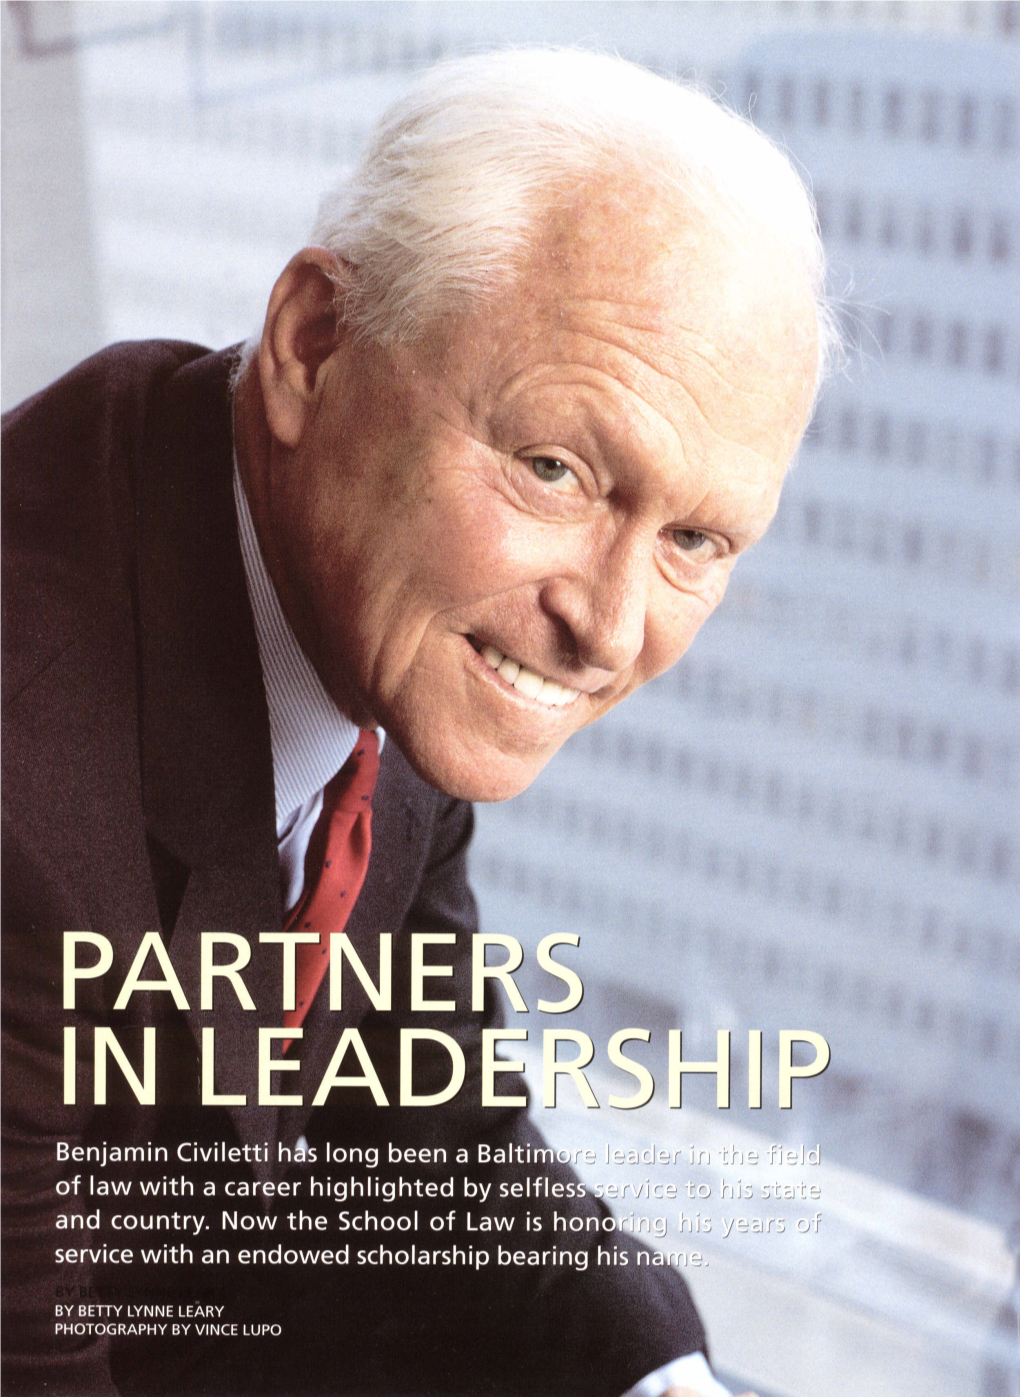 Partners in Leadership